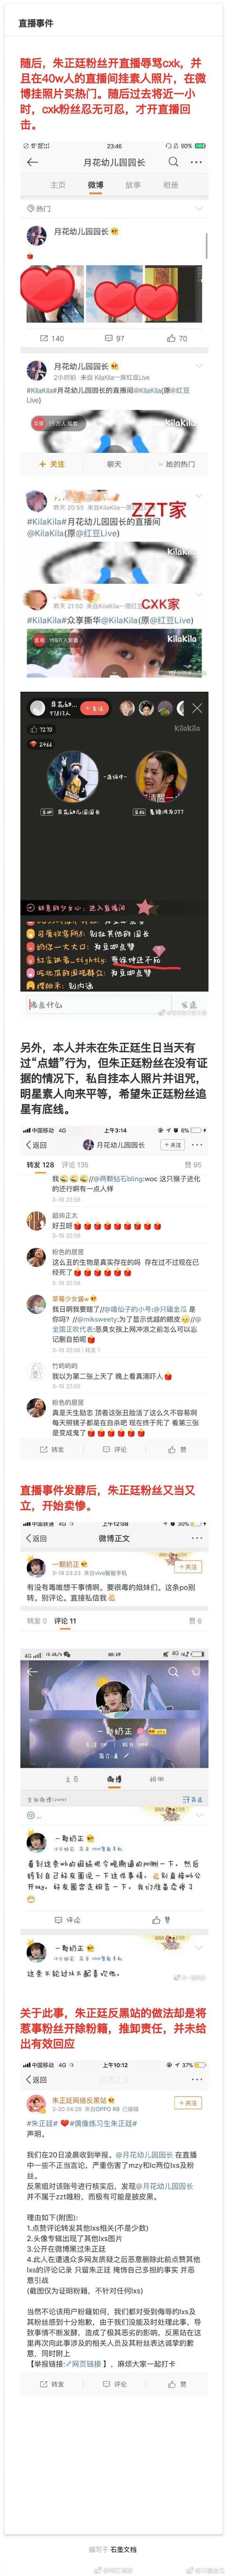 蔡徐坤与朱正廷粉丝正面开撕，乐华公司采取法律手段依法追责